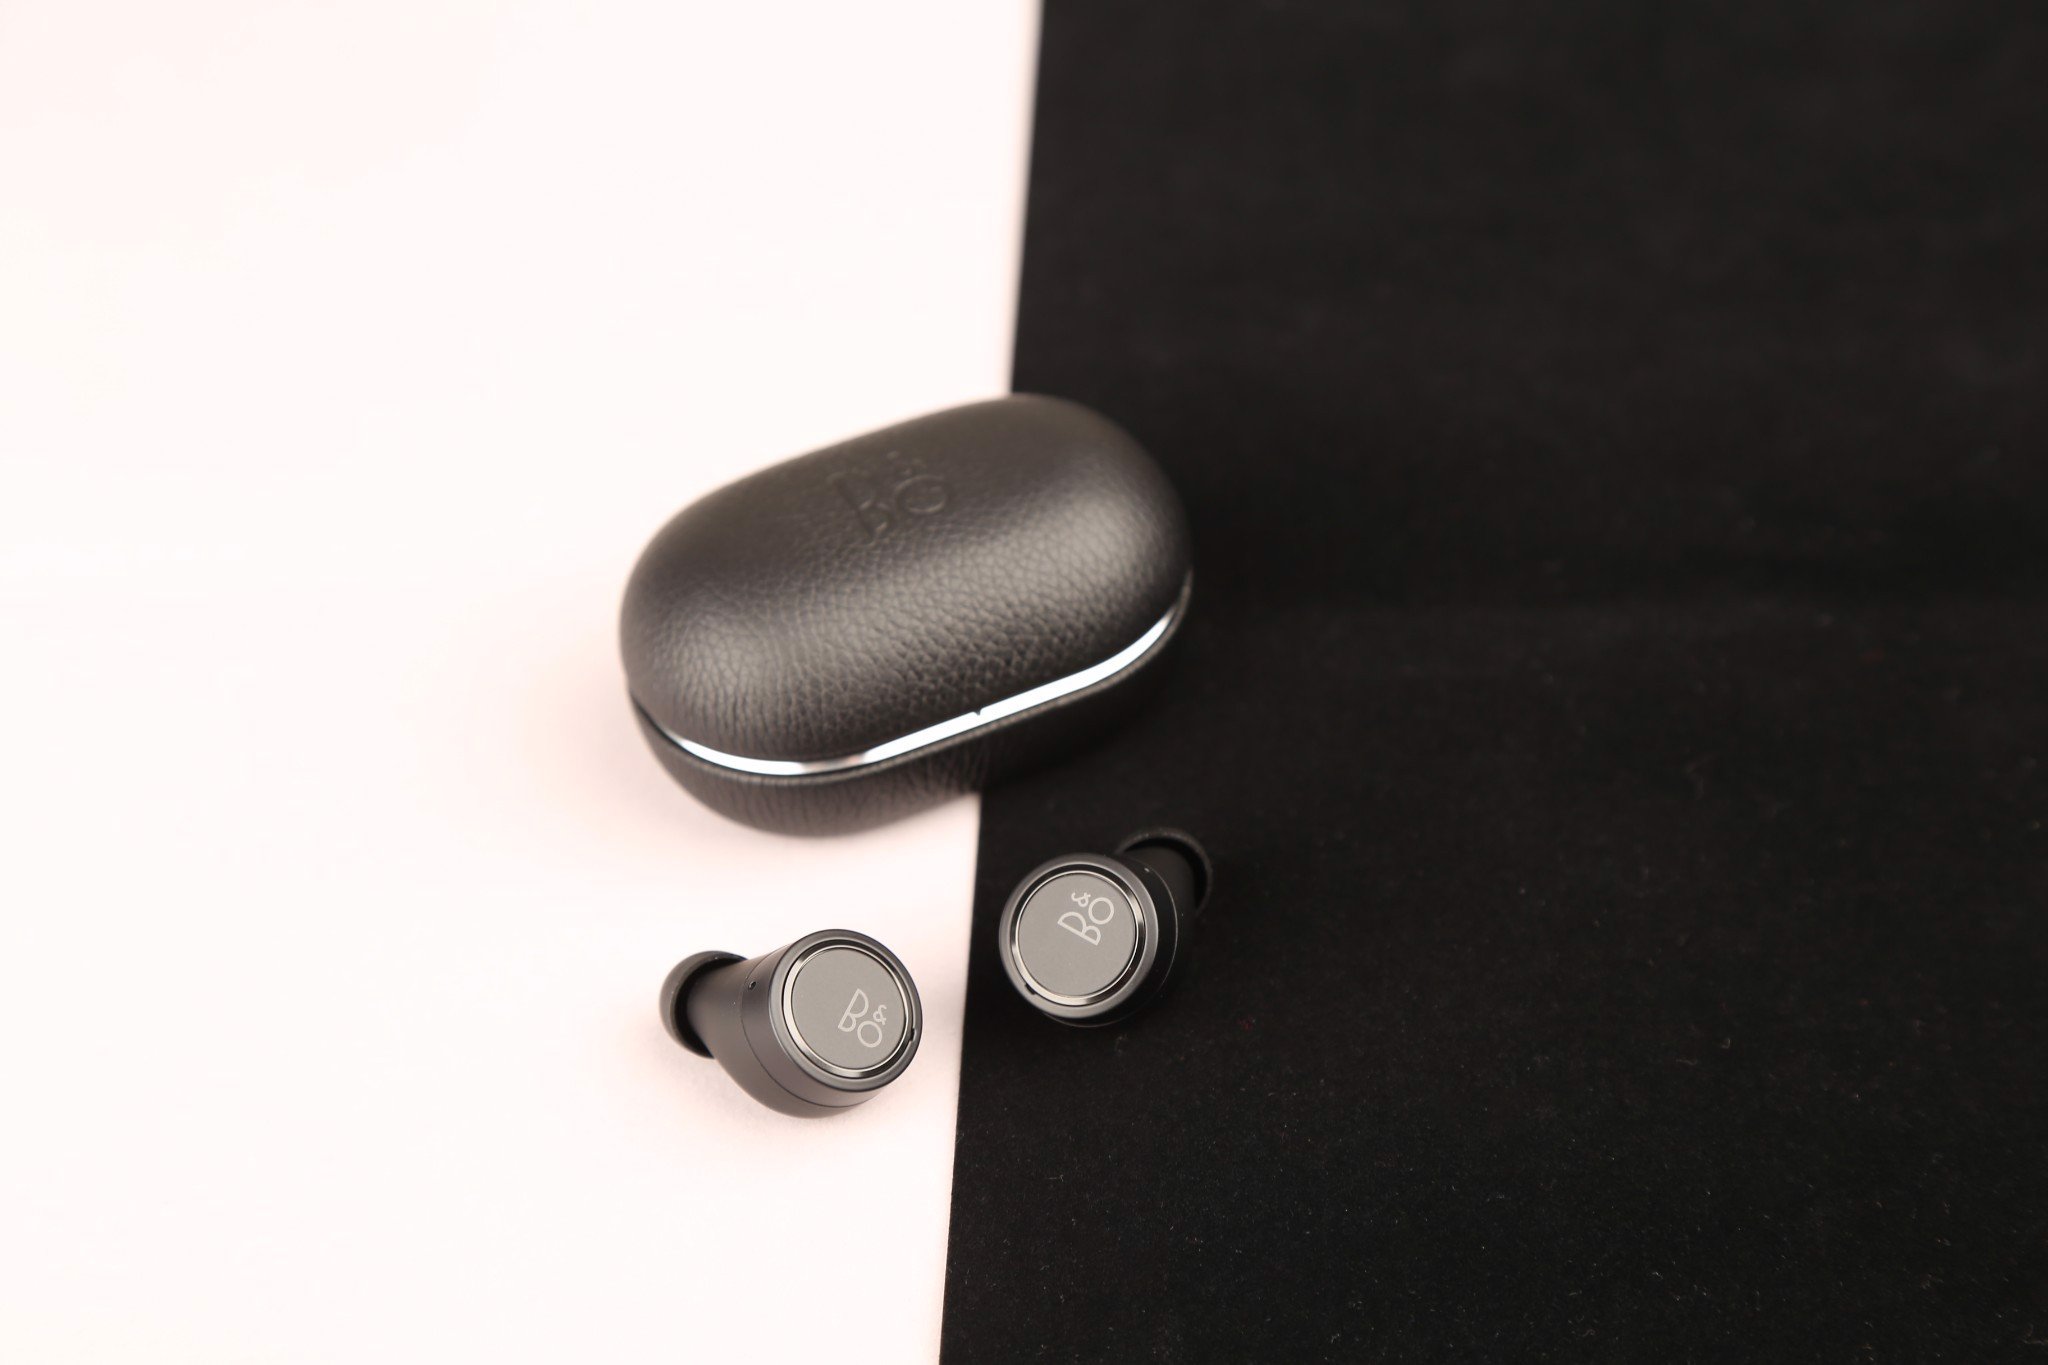 Tai nghe Bluetooth Beoplay E8 3.0 Black - Hàng chính hãng